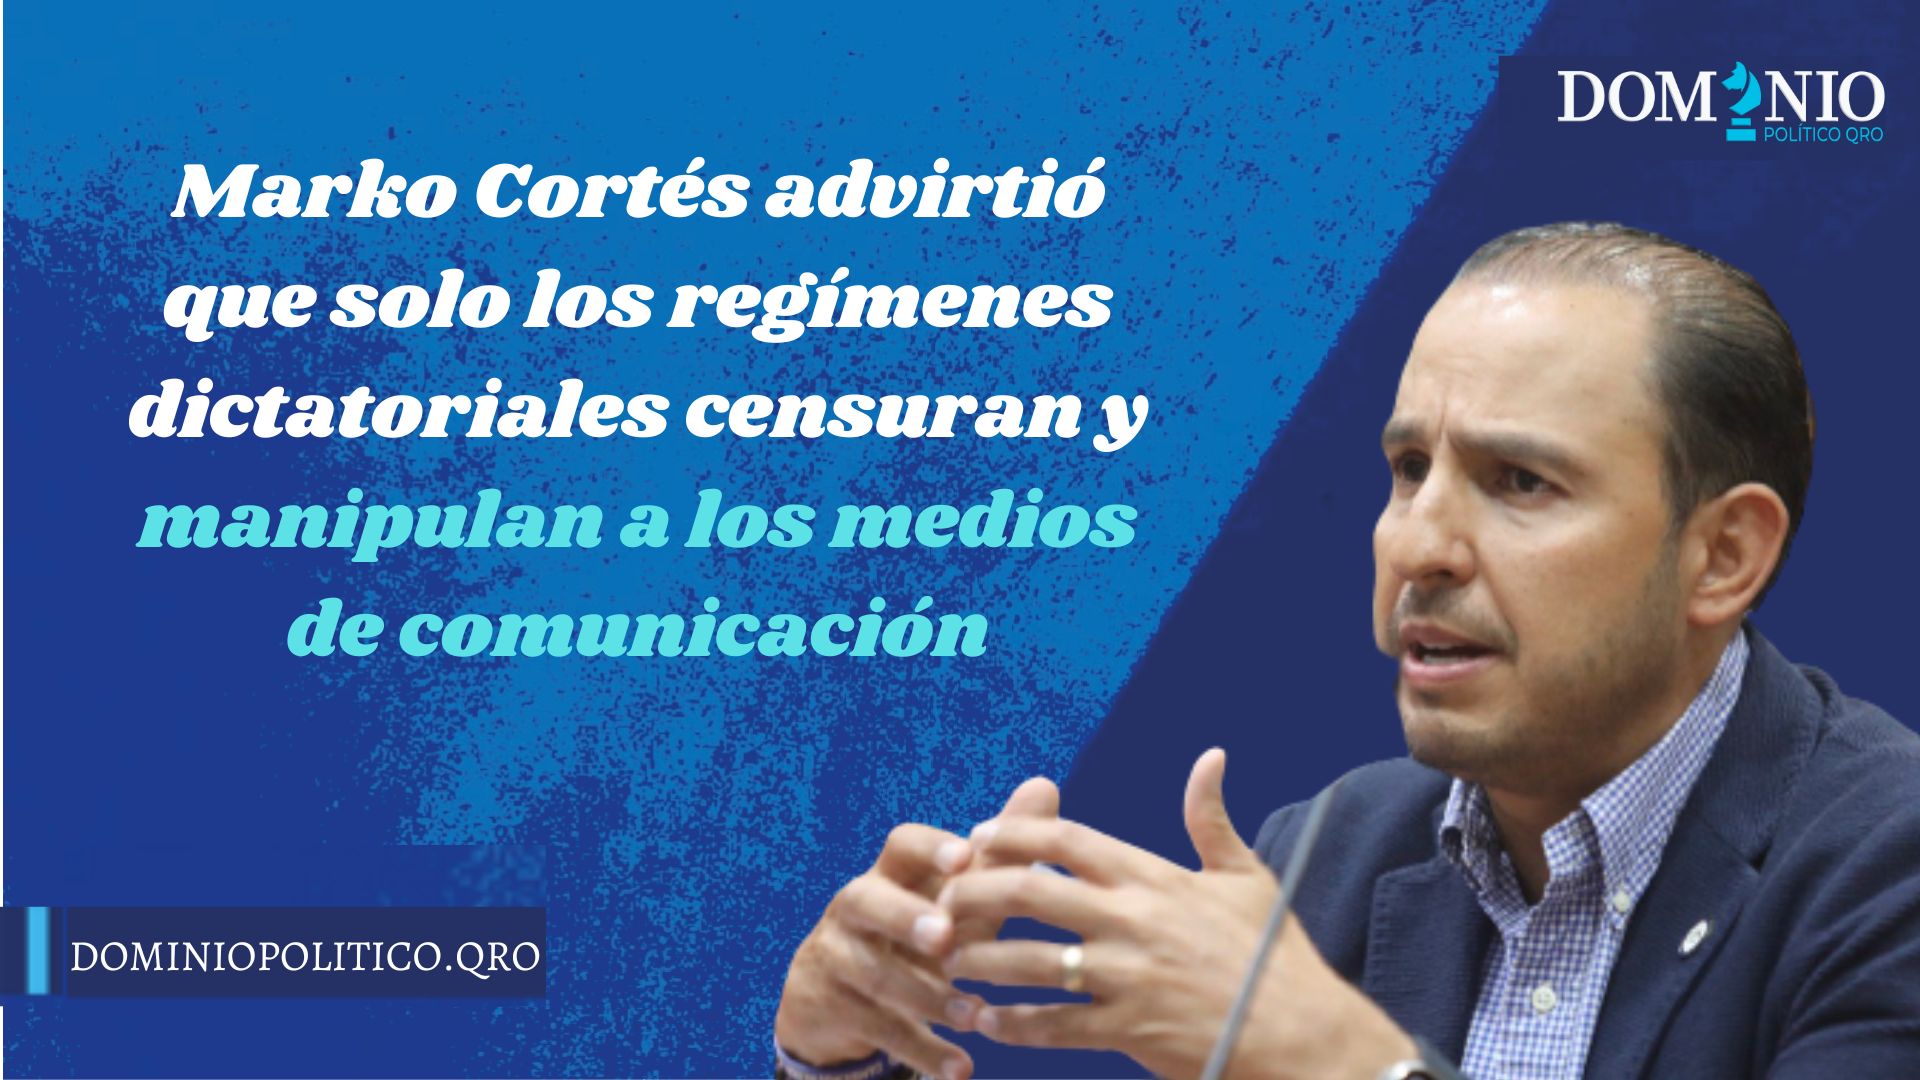 Marko Cortés advirtió que solo los regímenes dictatoriales censuran y manipulan a los medios de comunicación